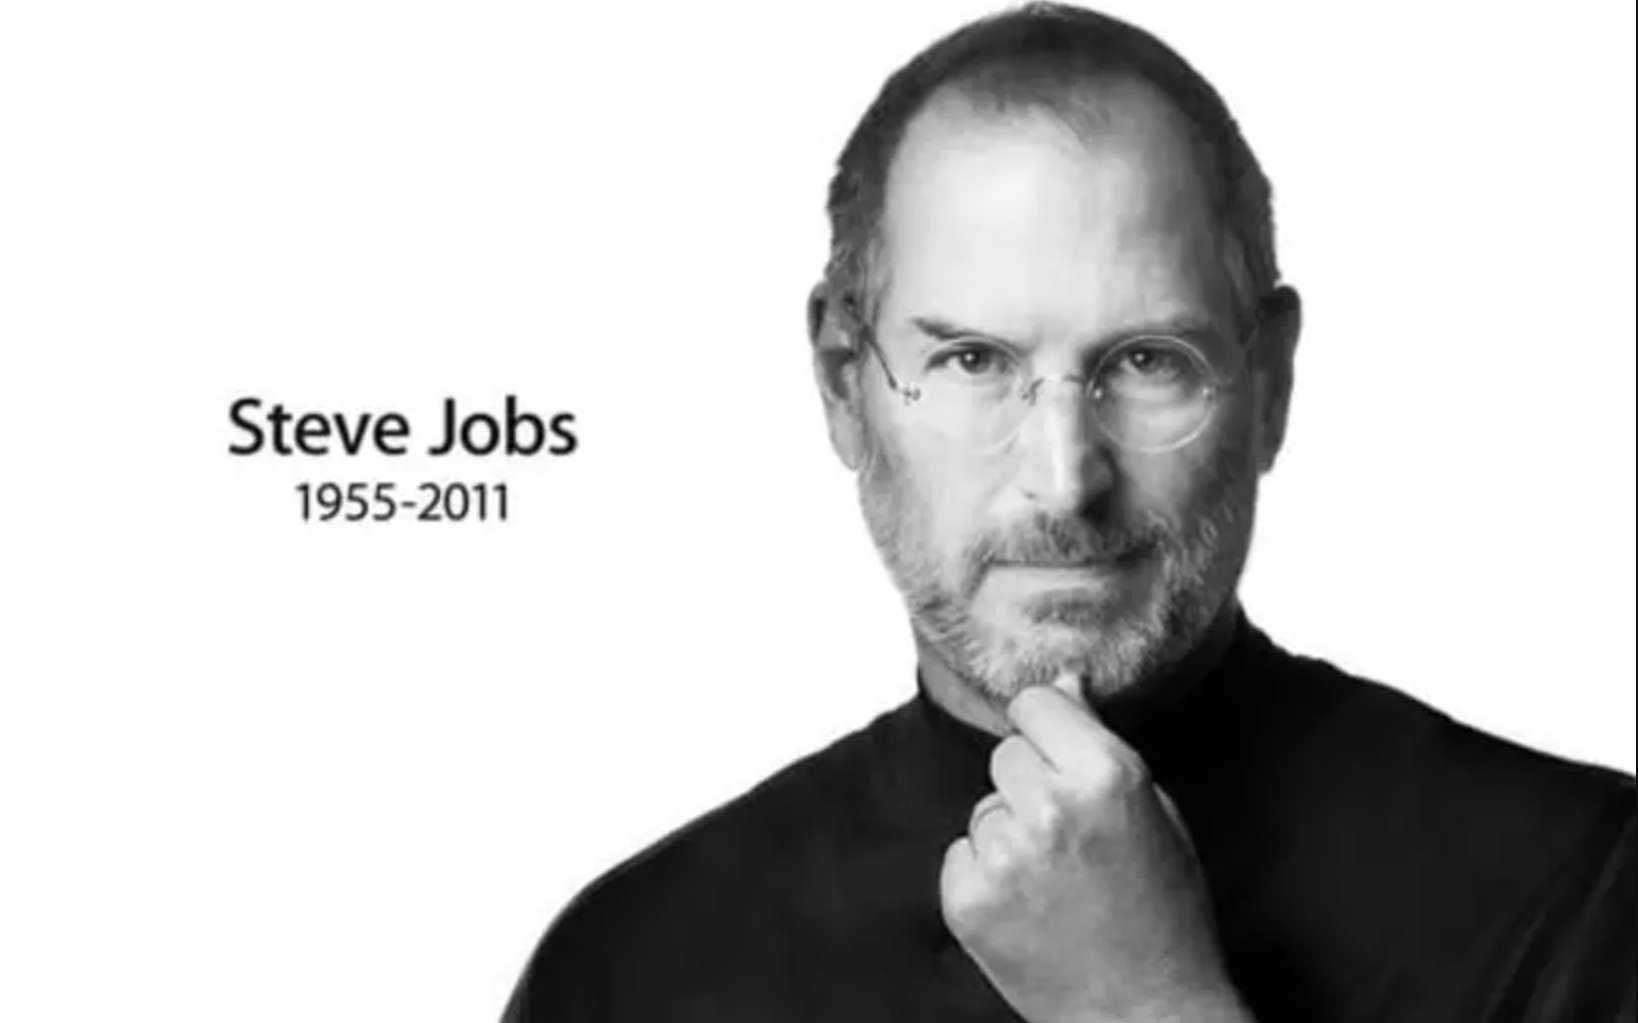 Steve Jobs est mort il y a dix ans : quels sont ses droits et ses obligations en termes d'avenir ?